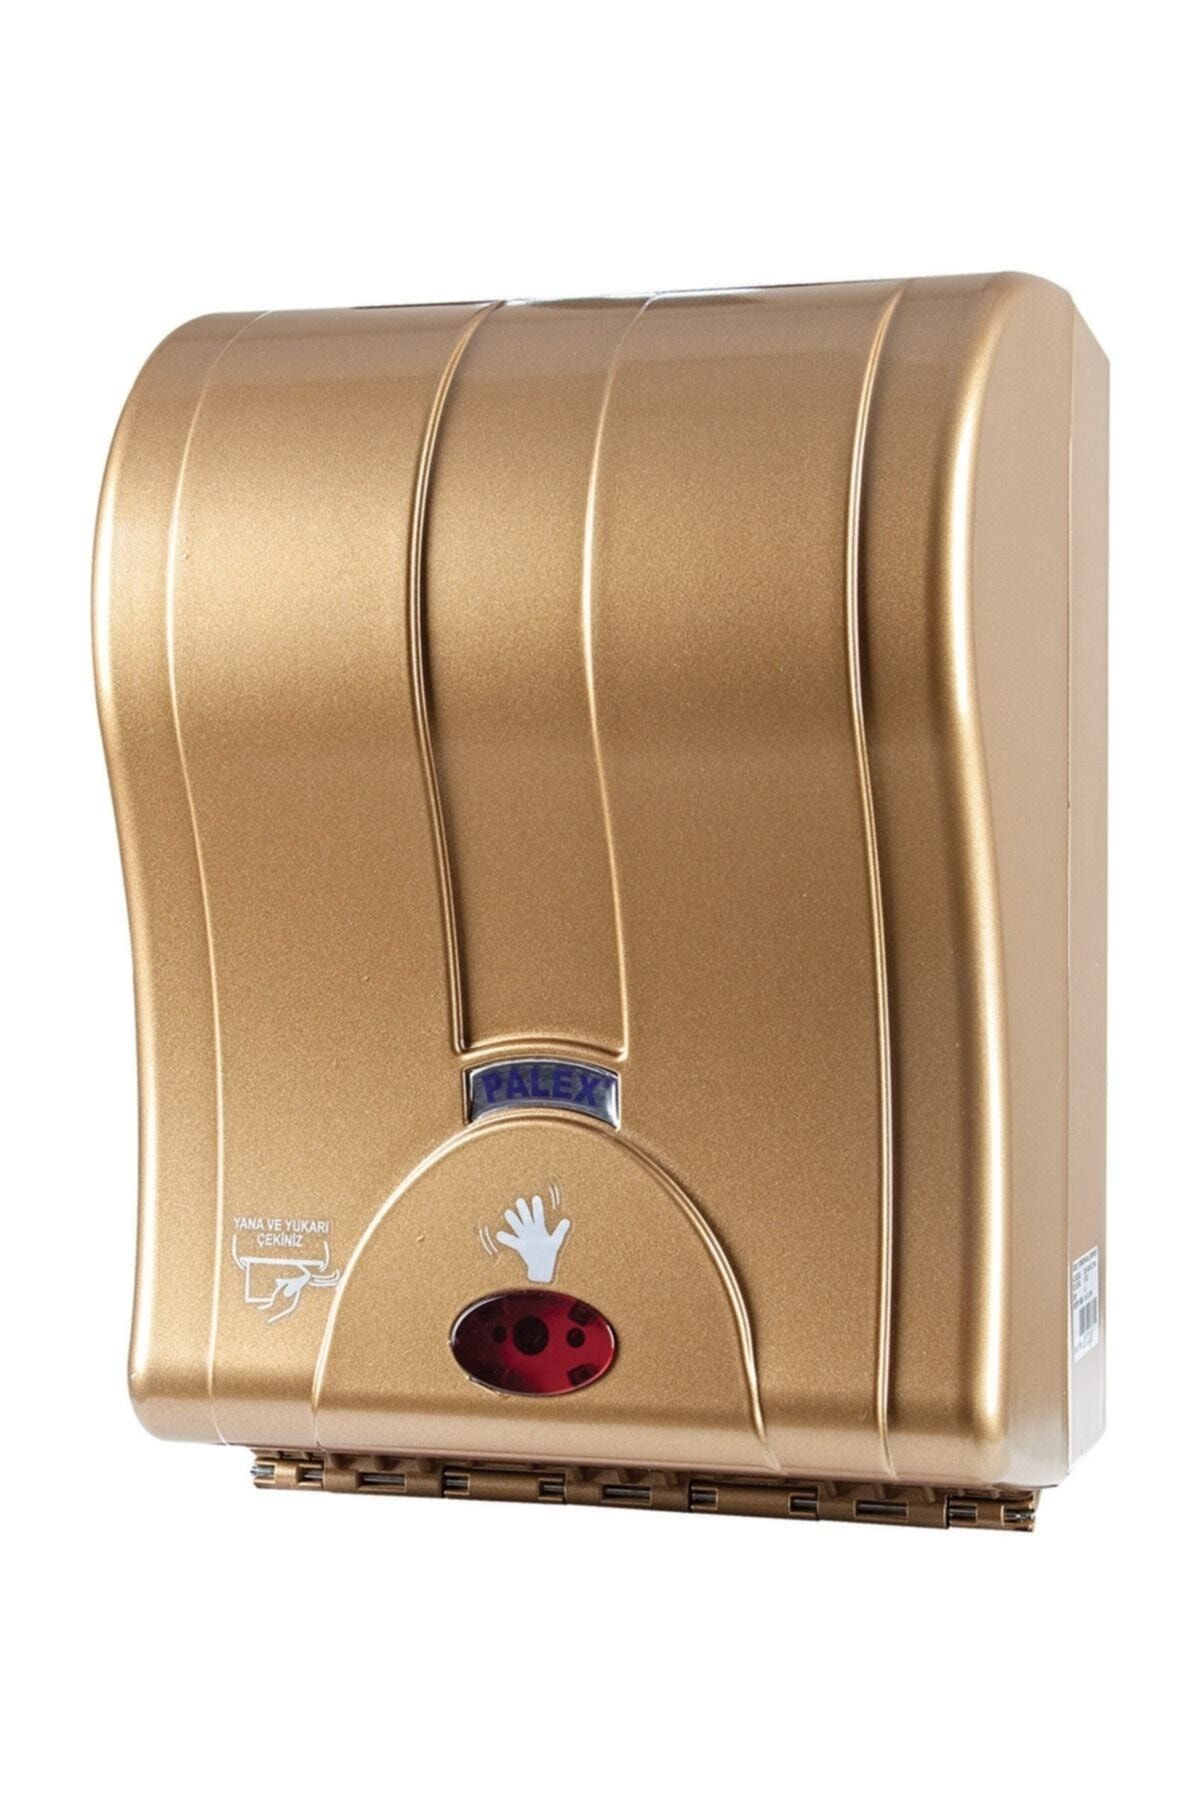 Palex 3491-5 Sensörlü Otomatik Havlu Makinası Gold